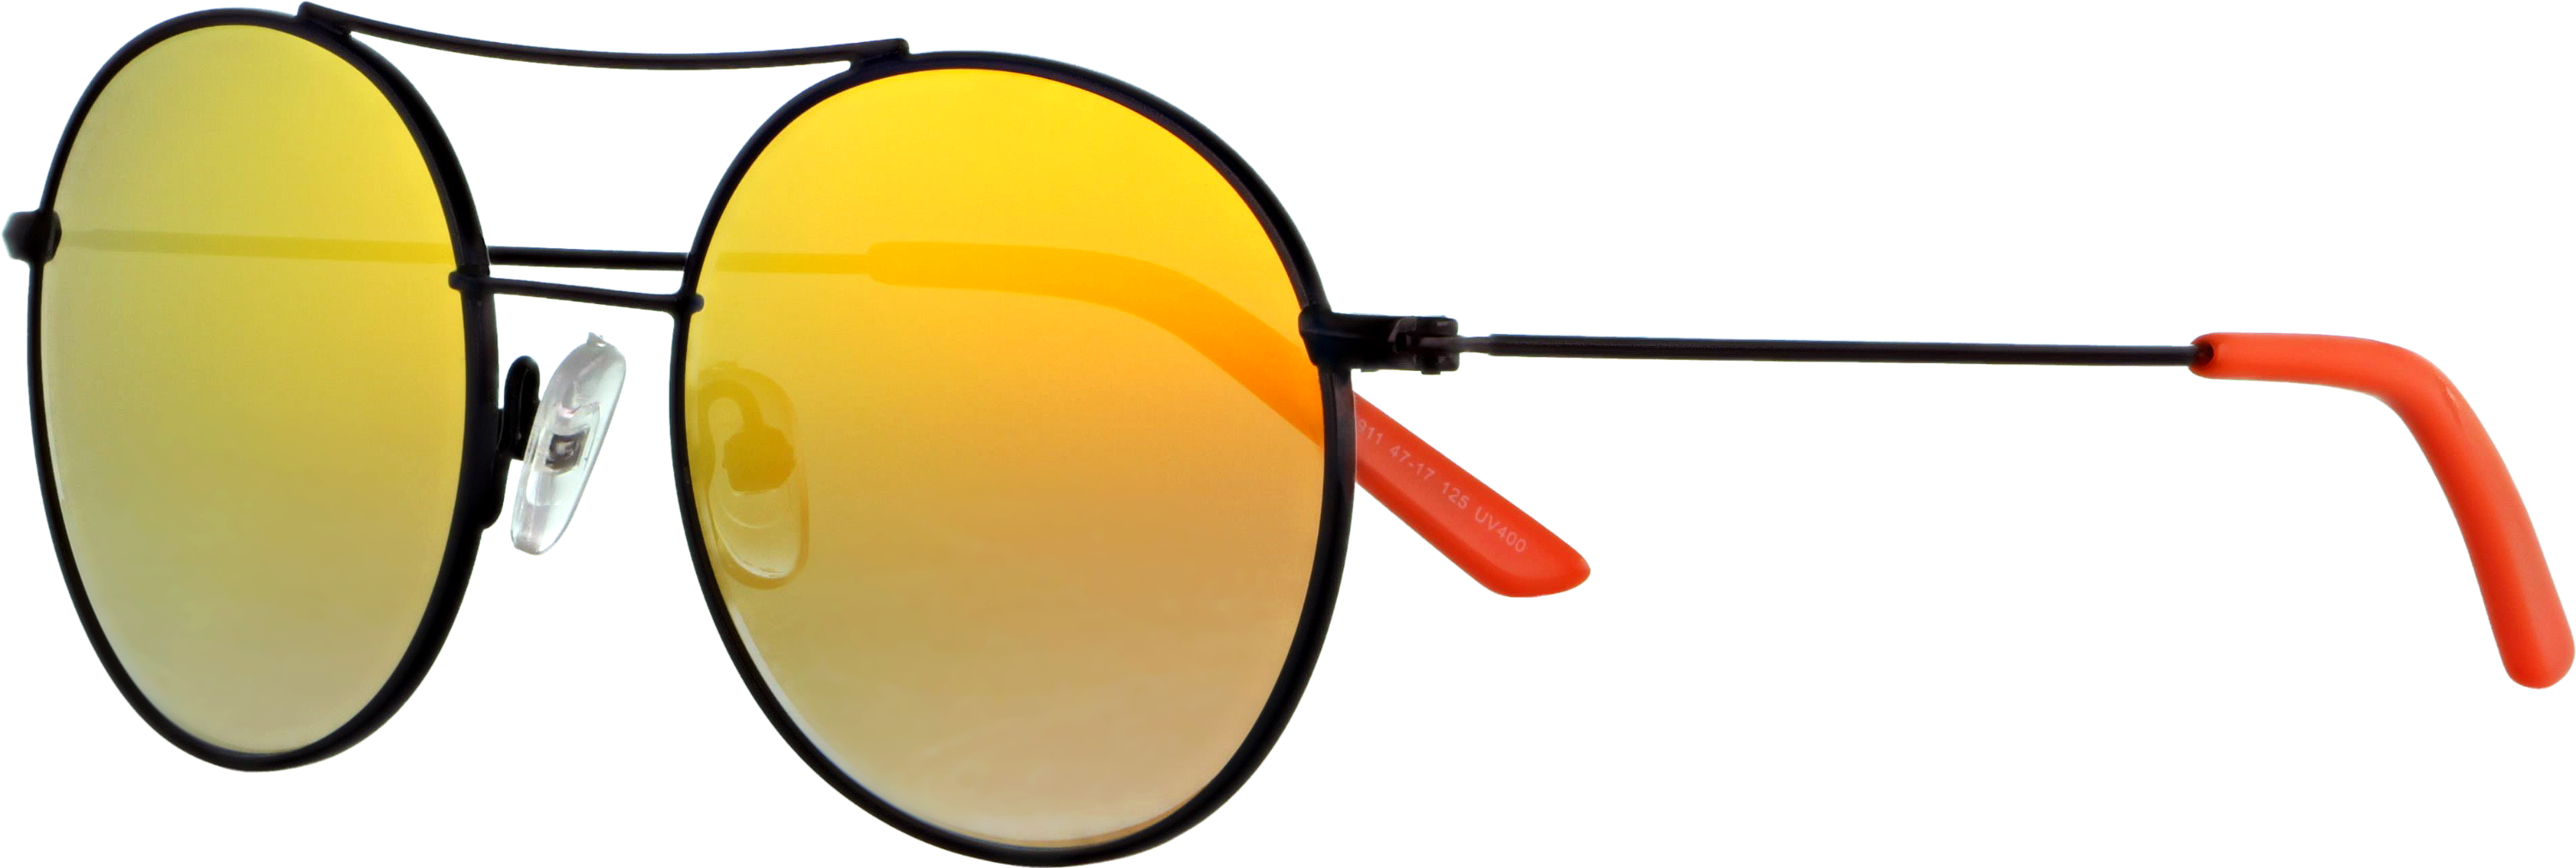 Das Bild zeigt die Sonnenbrille 717911 von der Marke Abele Optik in schwarz matt.